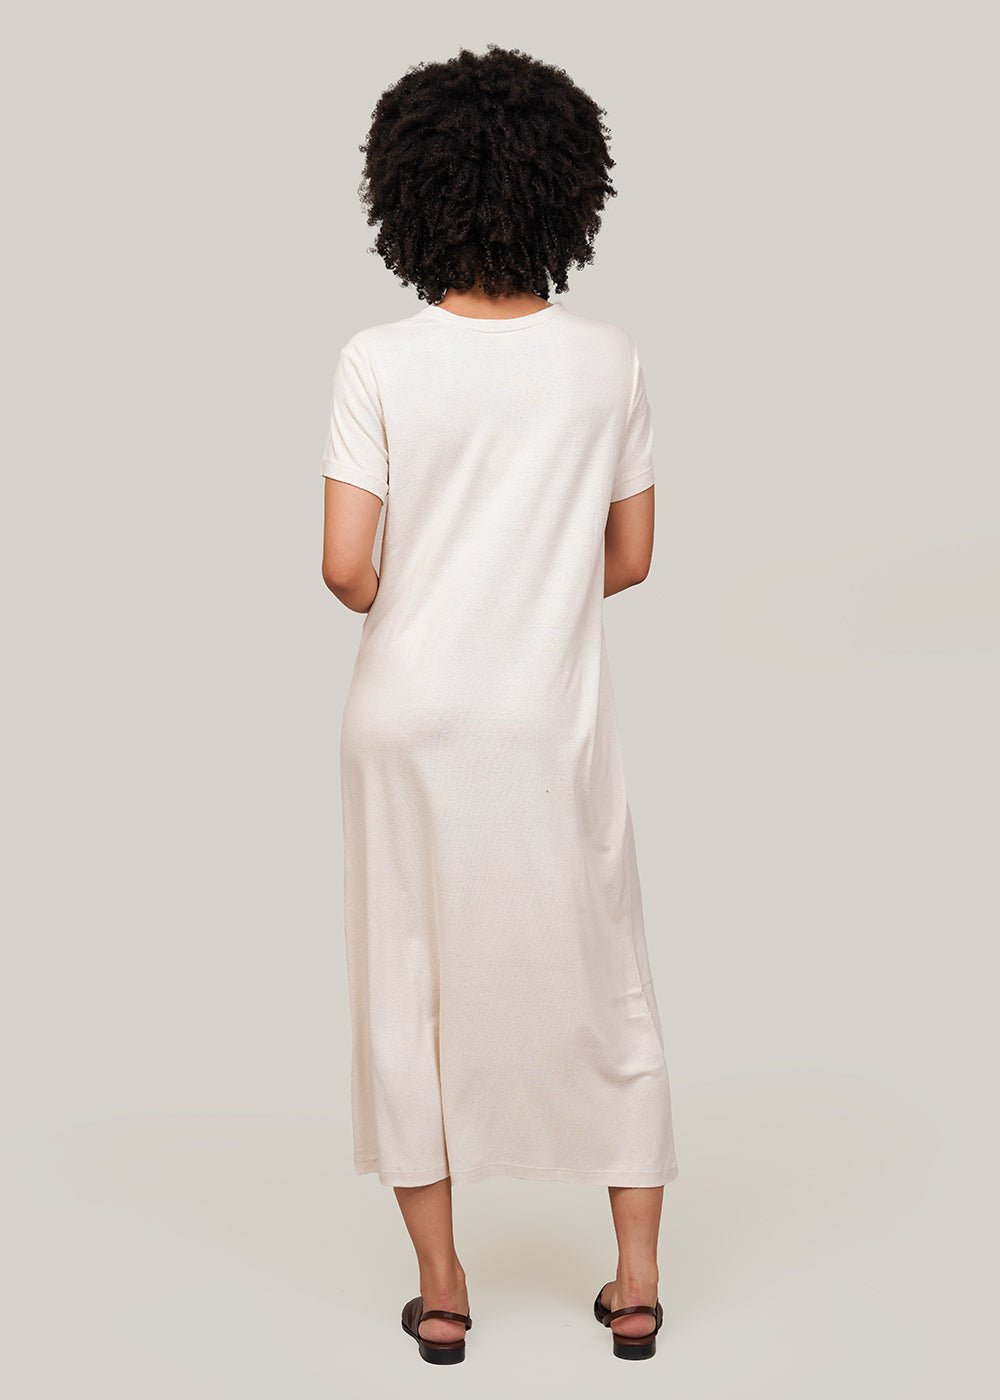 Baserange Undyed Silk Tee Dress - New Classics Studios Sustainable Ethical Fashion Canada